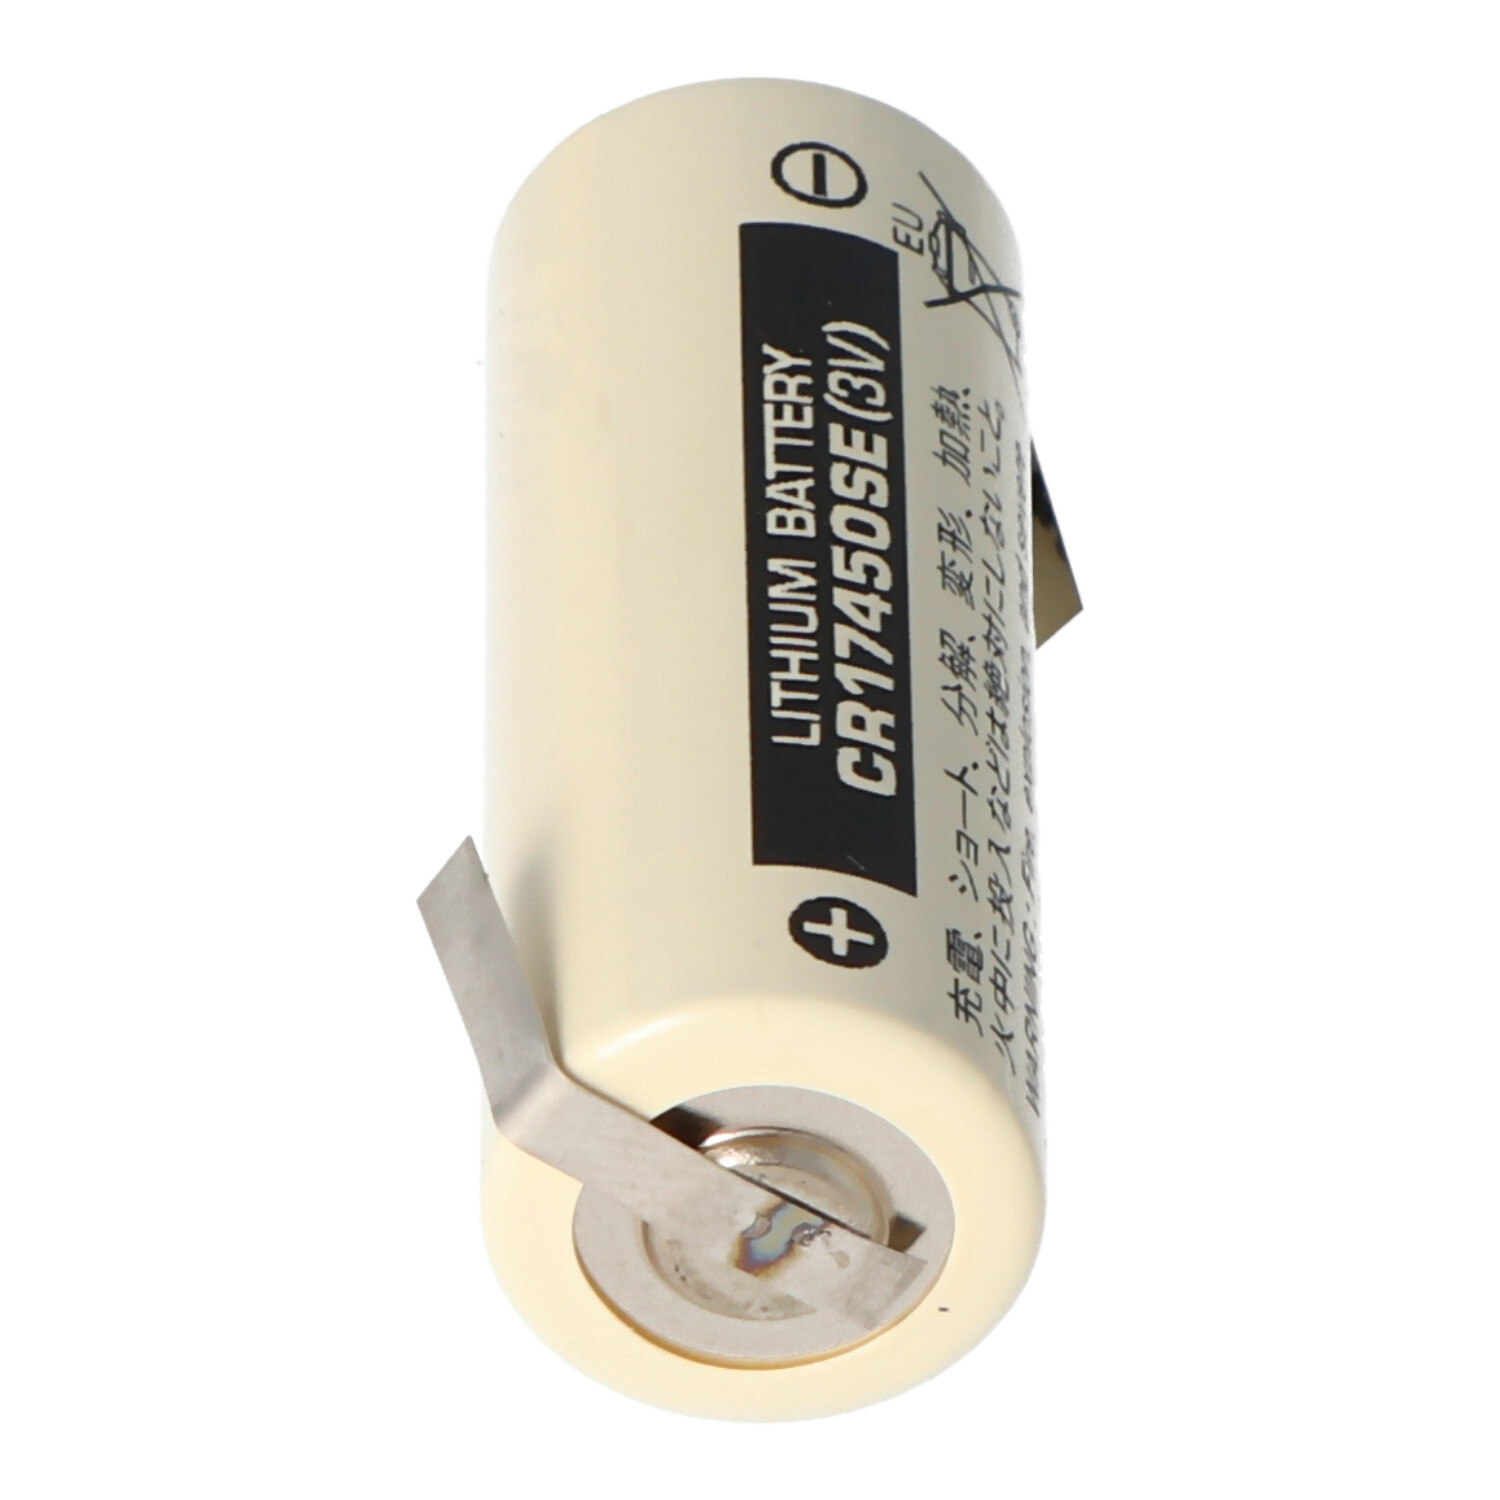 Sanyo Lithium Batterie CR17450SE Size A, mit Lötfahne Z-Form